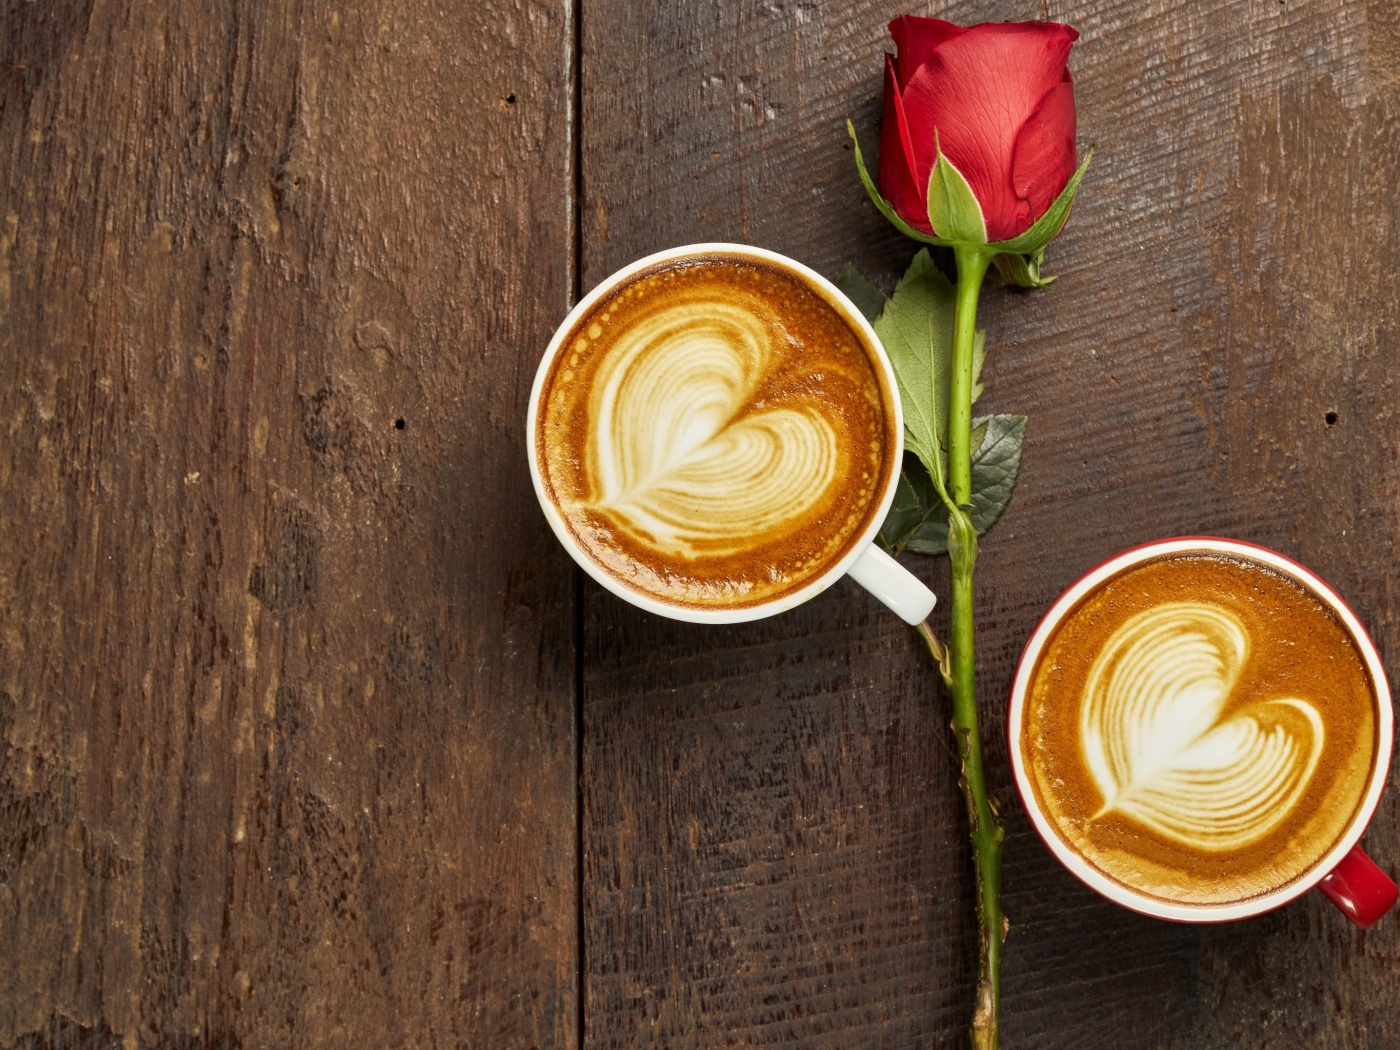 Обои Romantic Coffee and Rose 1400x1050